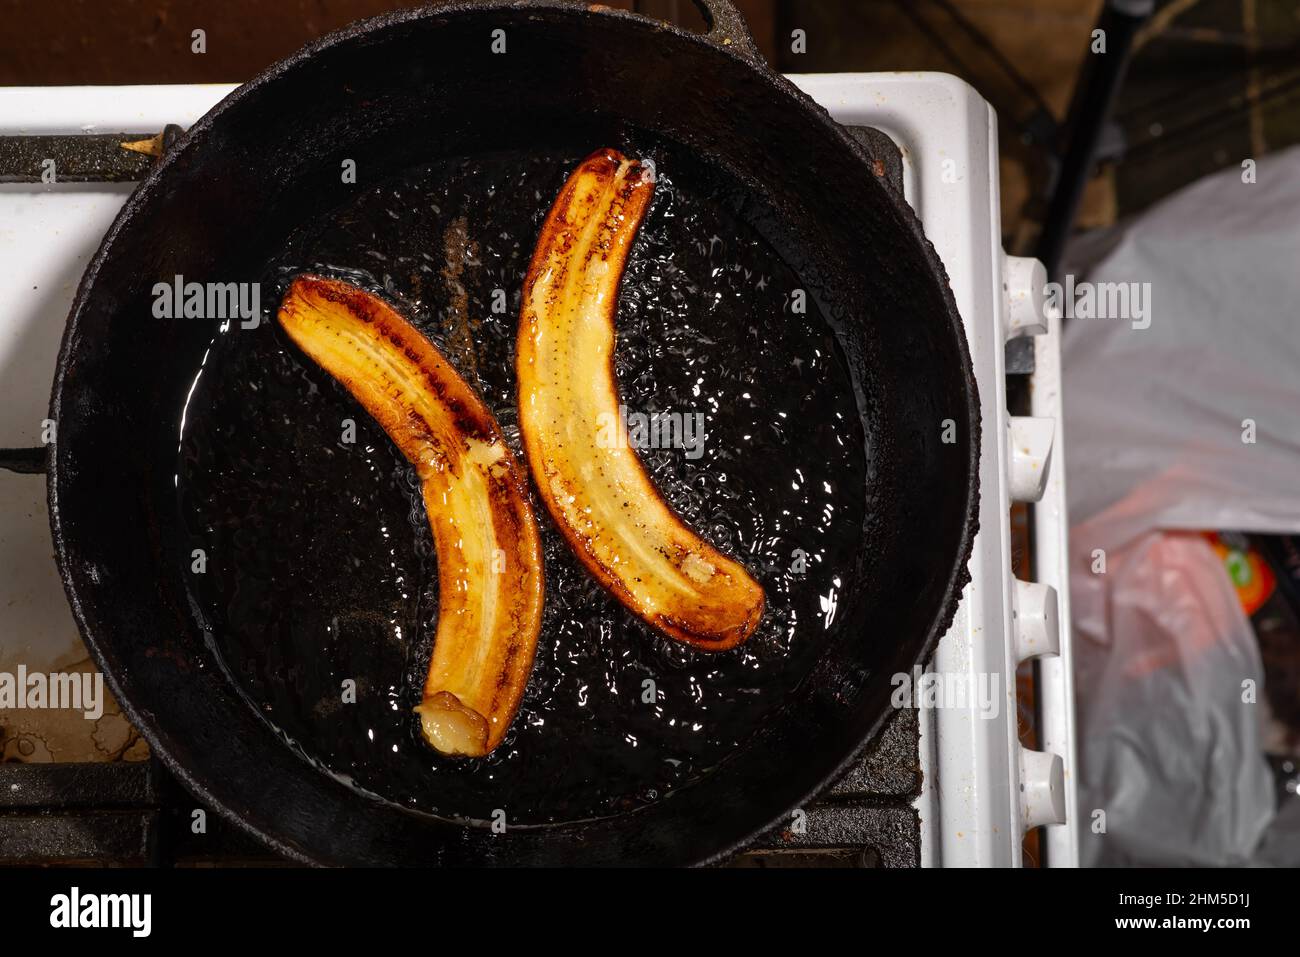 Gebratene Bananen in einer Pfanne. Rohe Bananen in Öl gekocht  Stockfotografie - Alamy